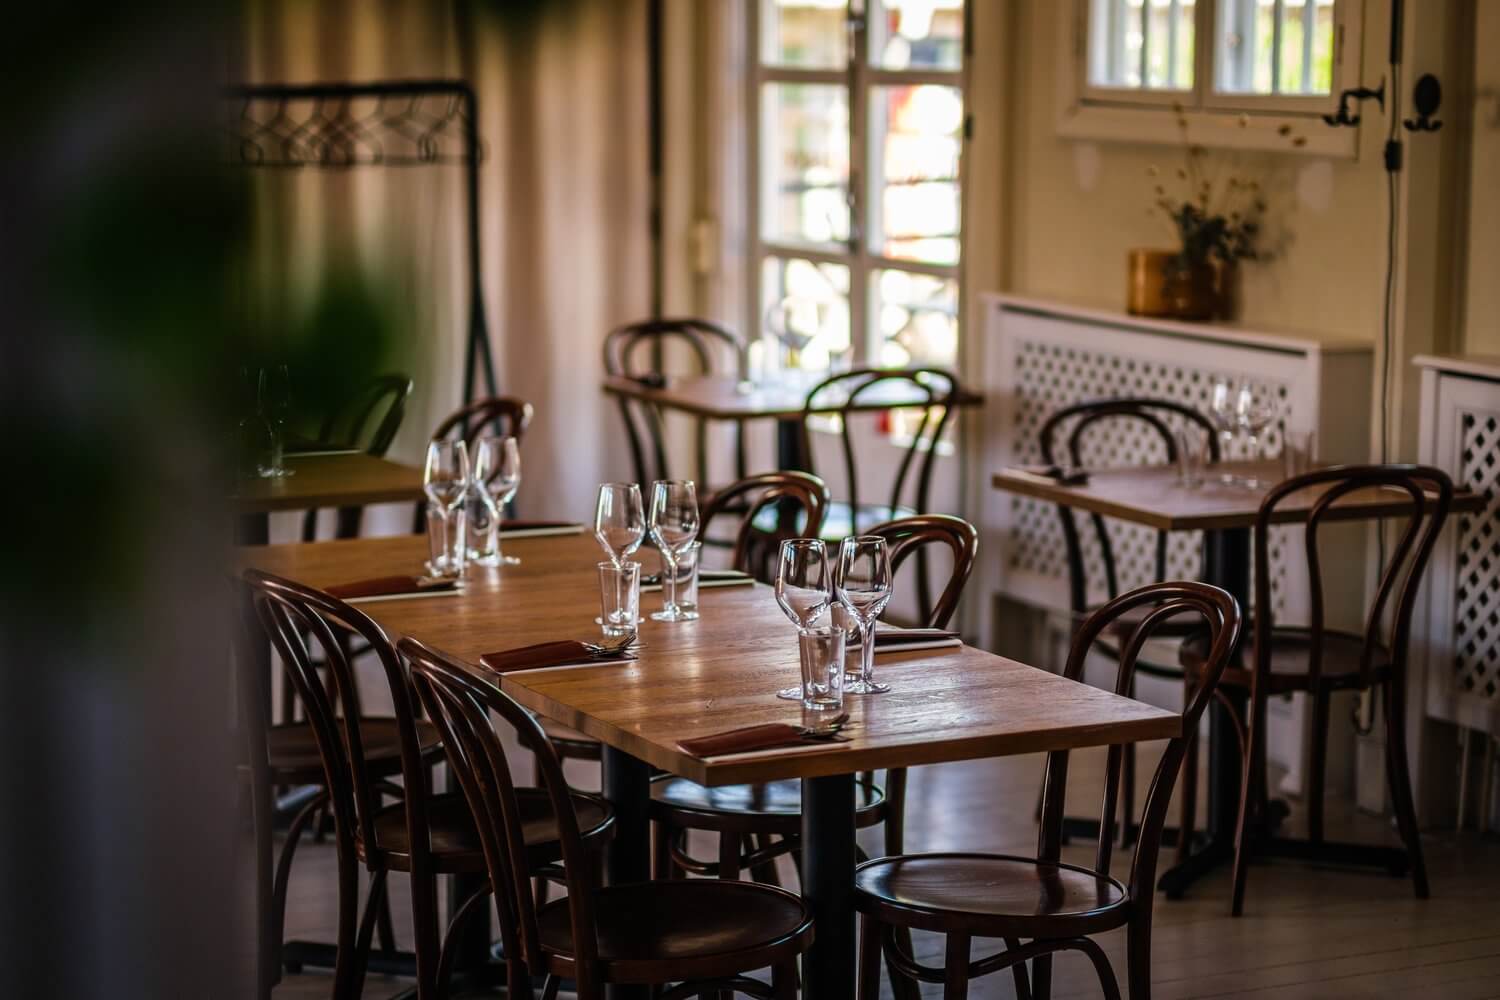 Husette är en ljus restaurang med en smakfull inredning på Konstepedemin i Göteborg